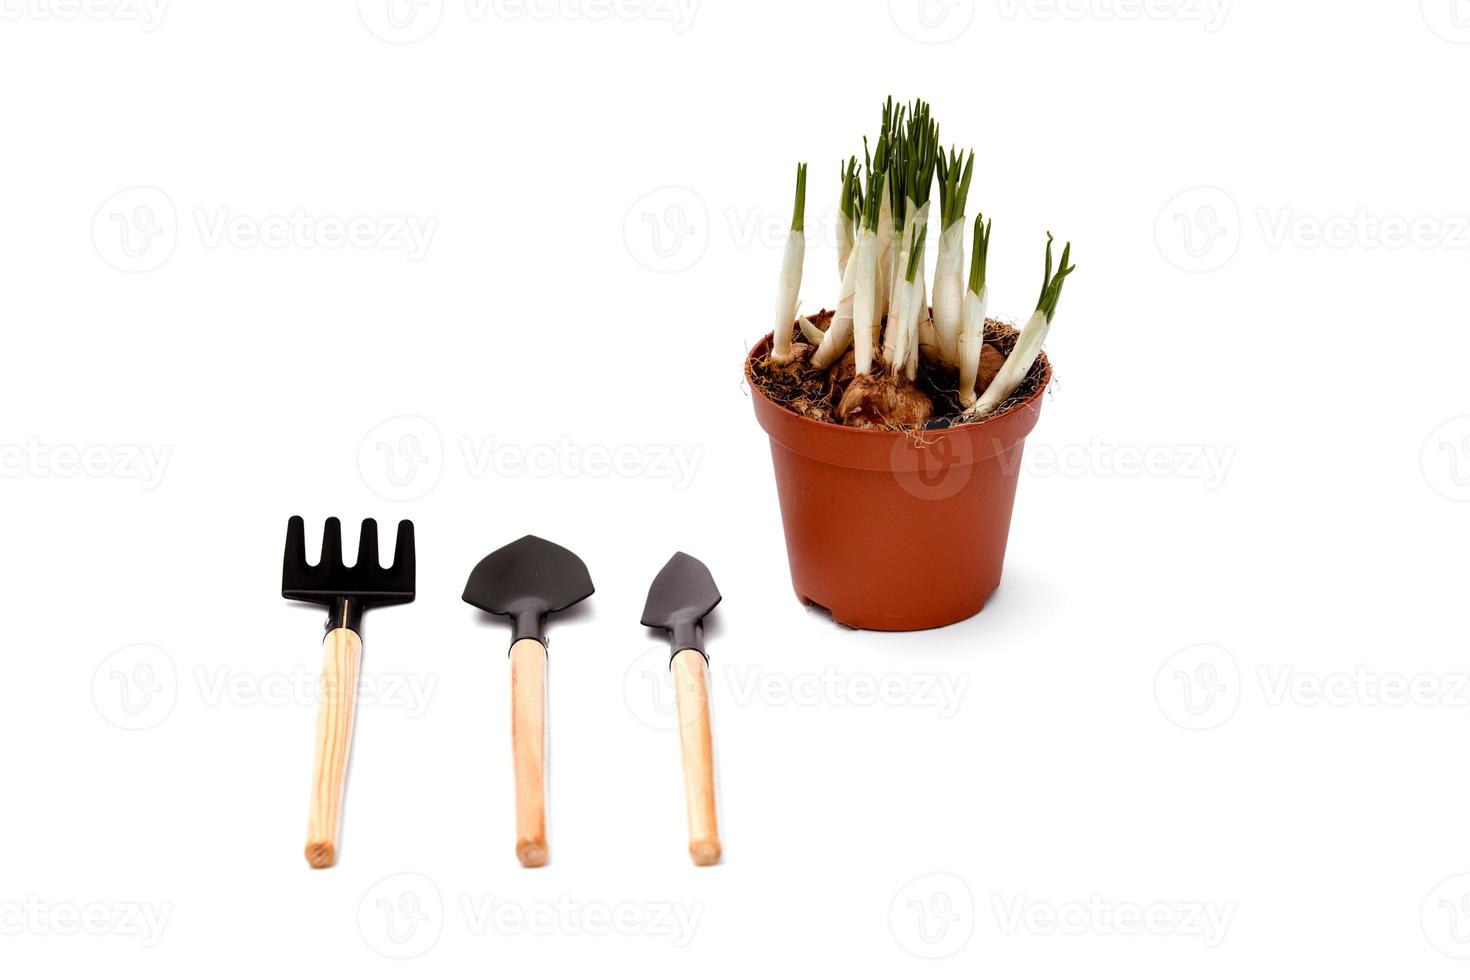 narcisos y herramientas de jardinería. herramientas para jardinería y riego flores aisladas sobre un fondo blanco. flores de narciso en una maceta foto